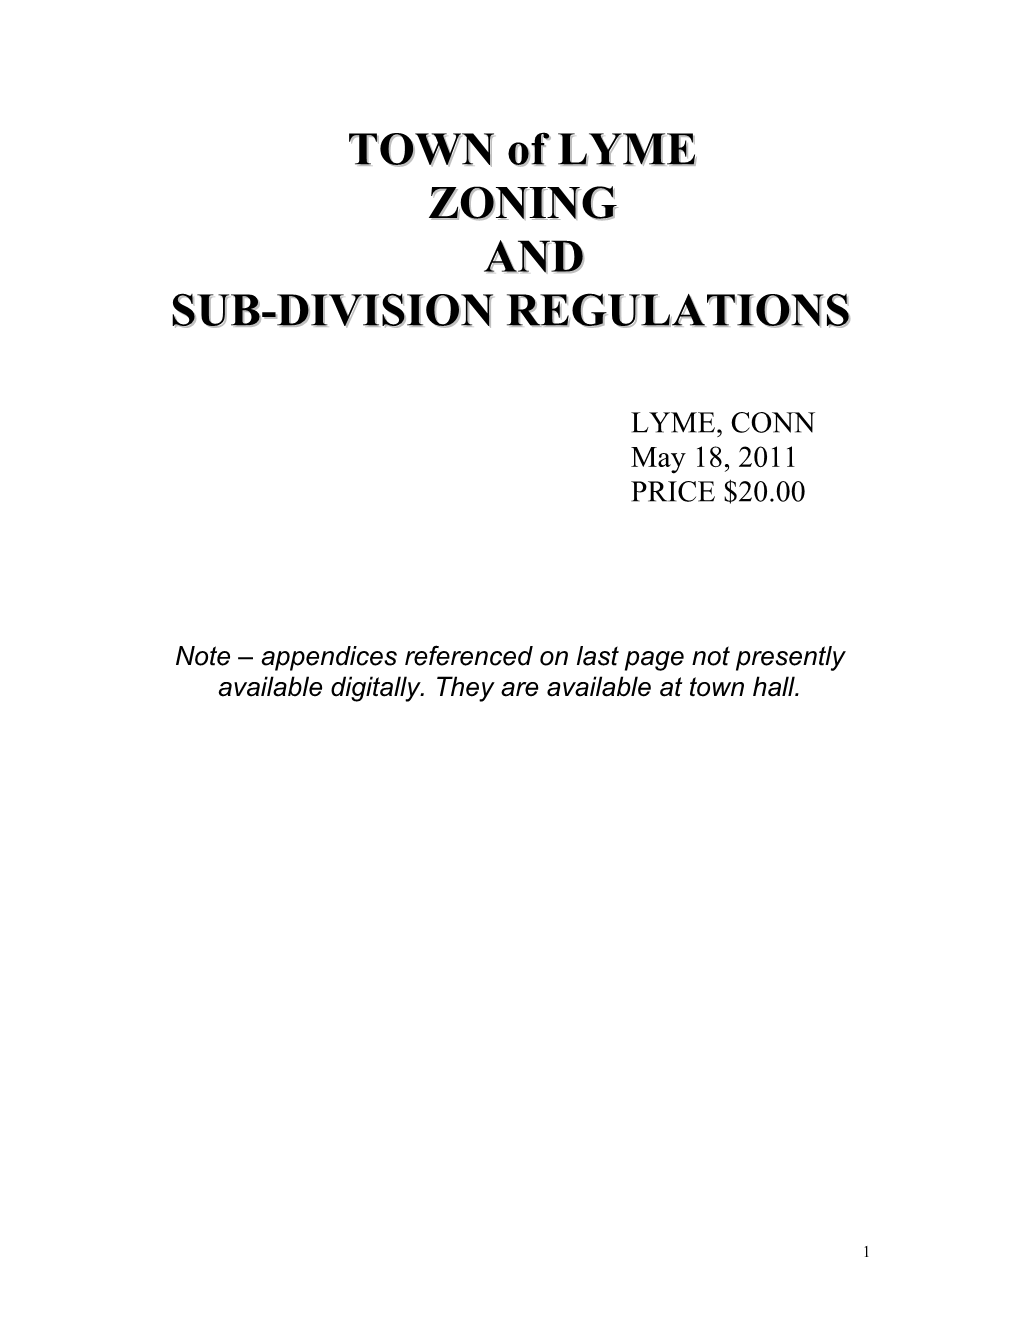 Sub-Division Regulations